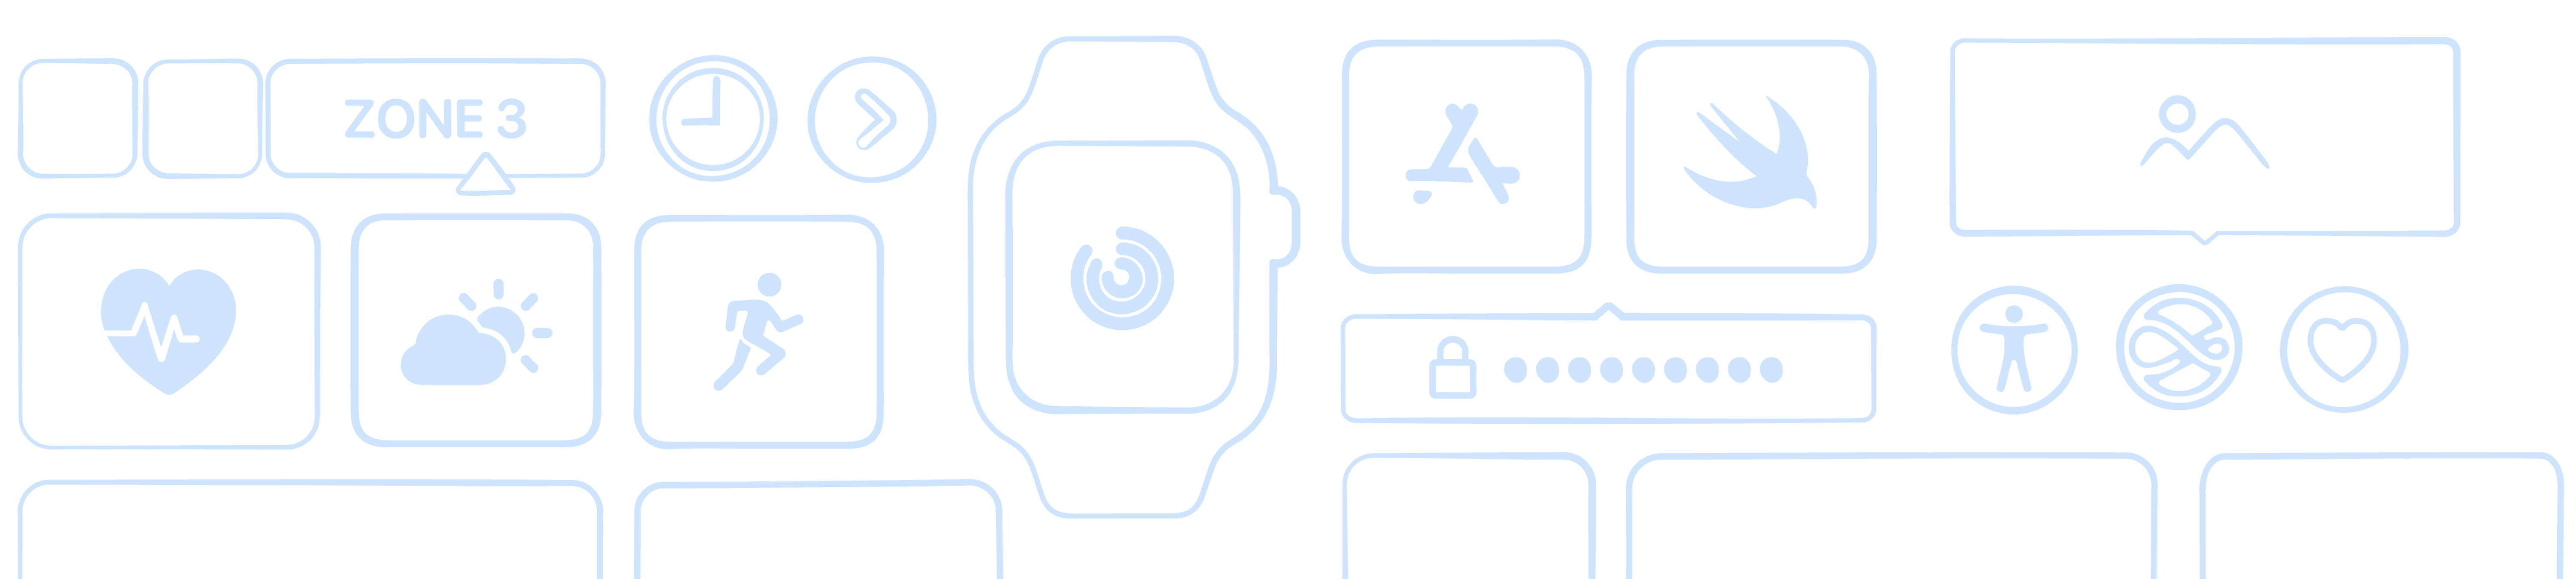 watchOS向けの新しいアプリとテクノロジーに関するStoryboard